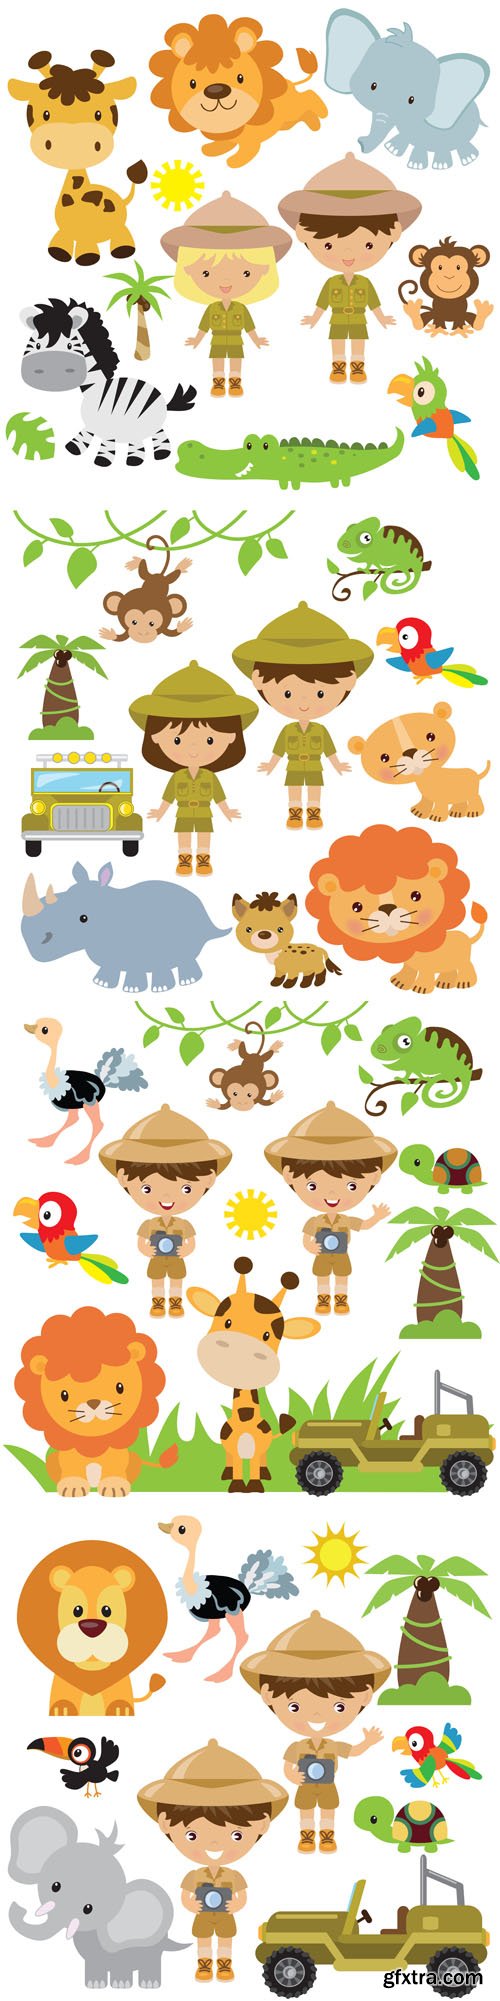 Safari illustration - Vectors A000028